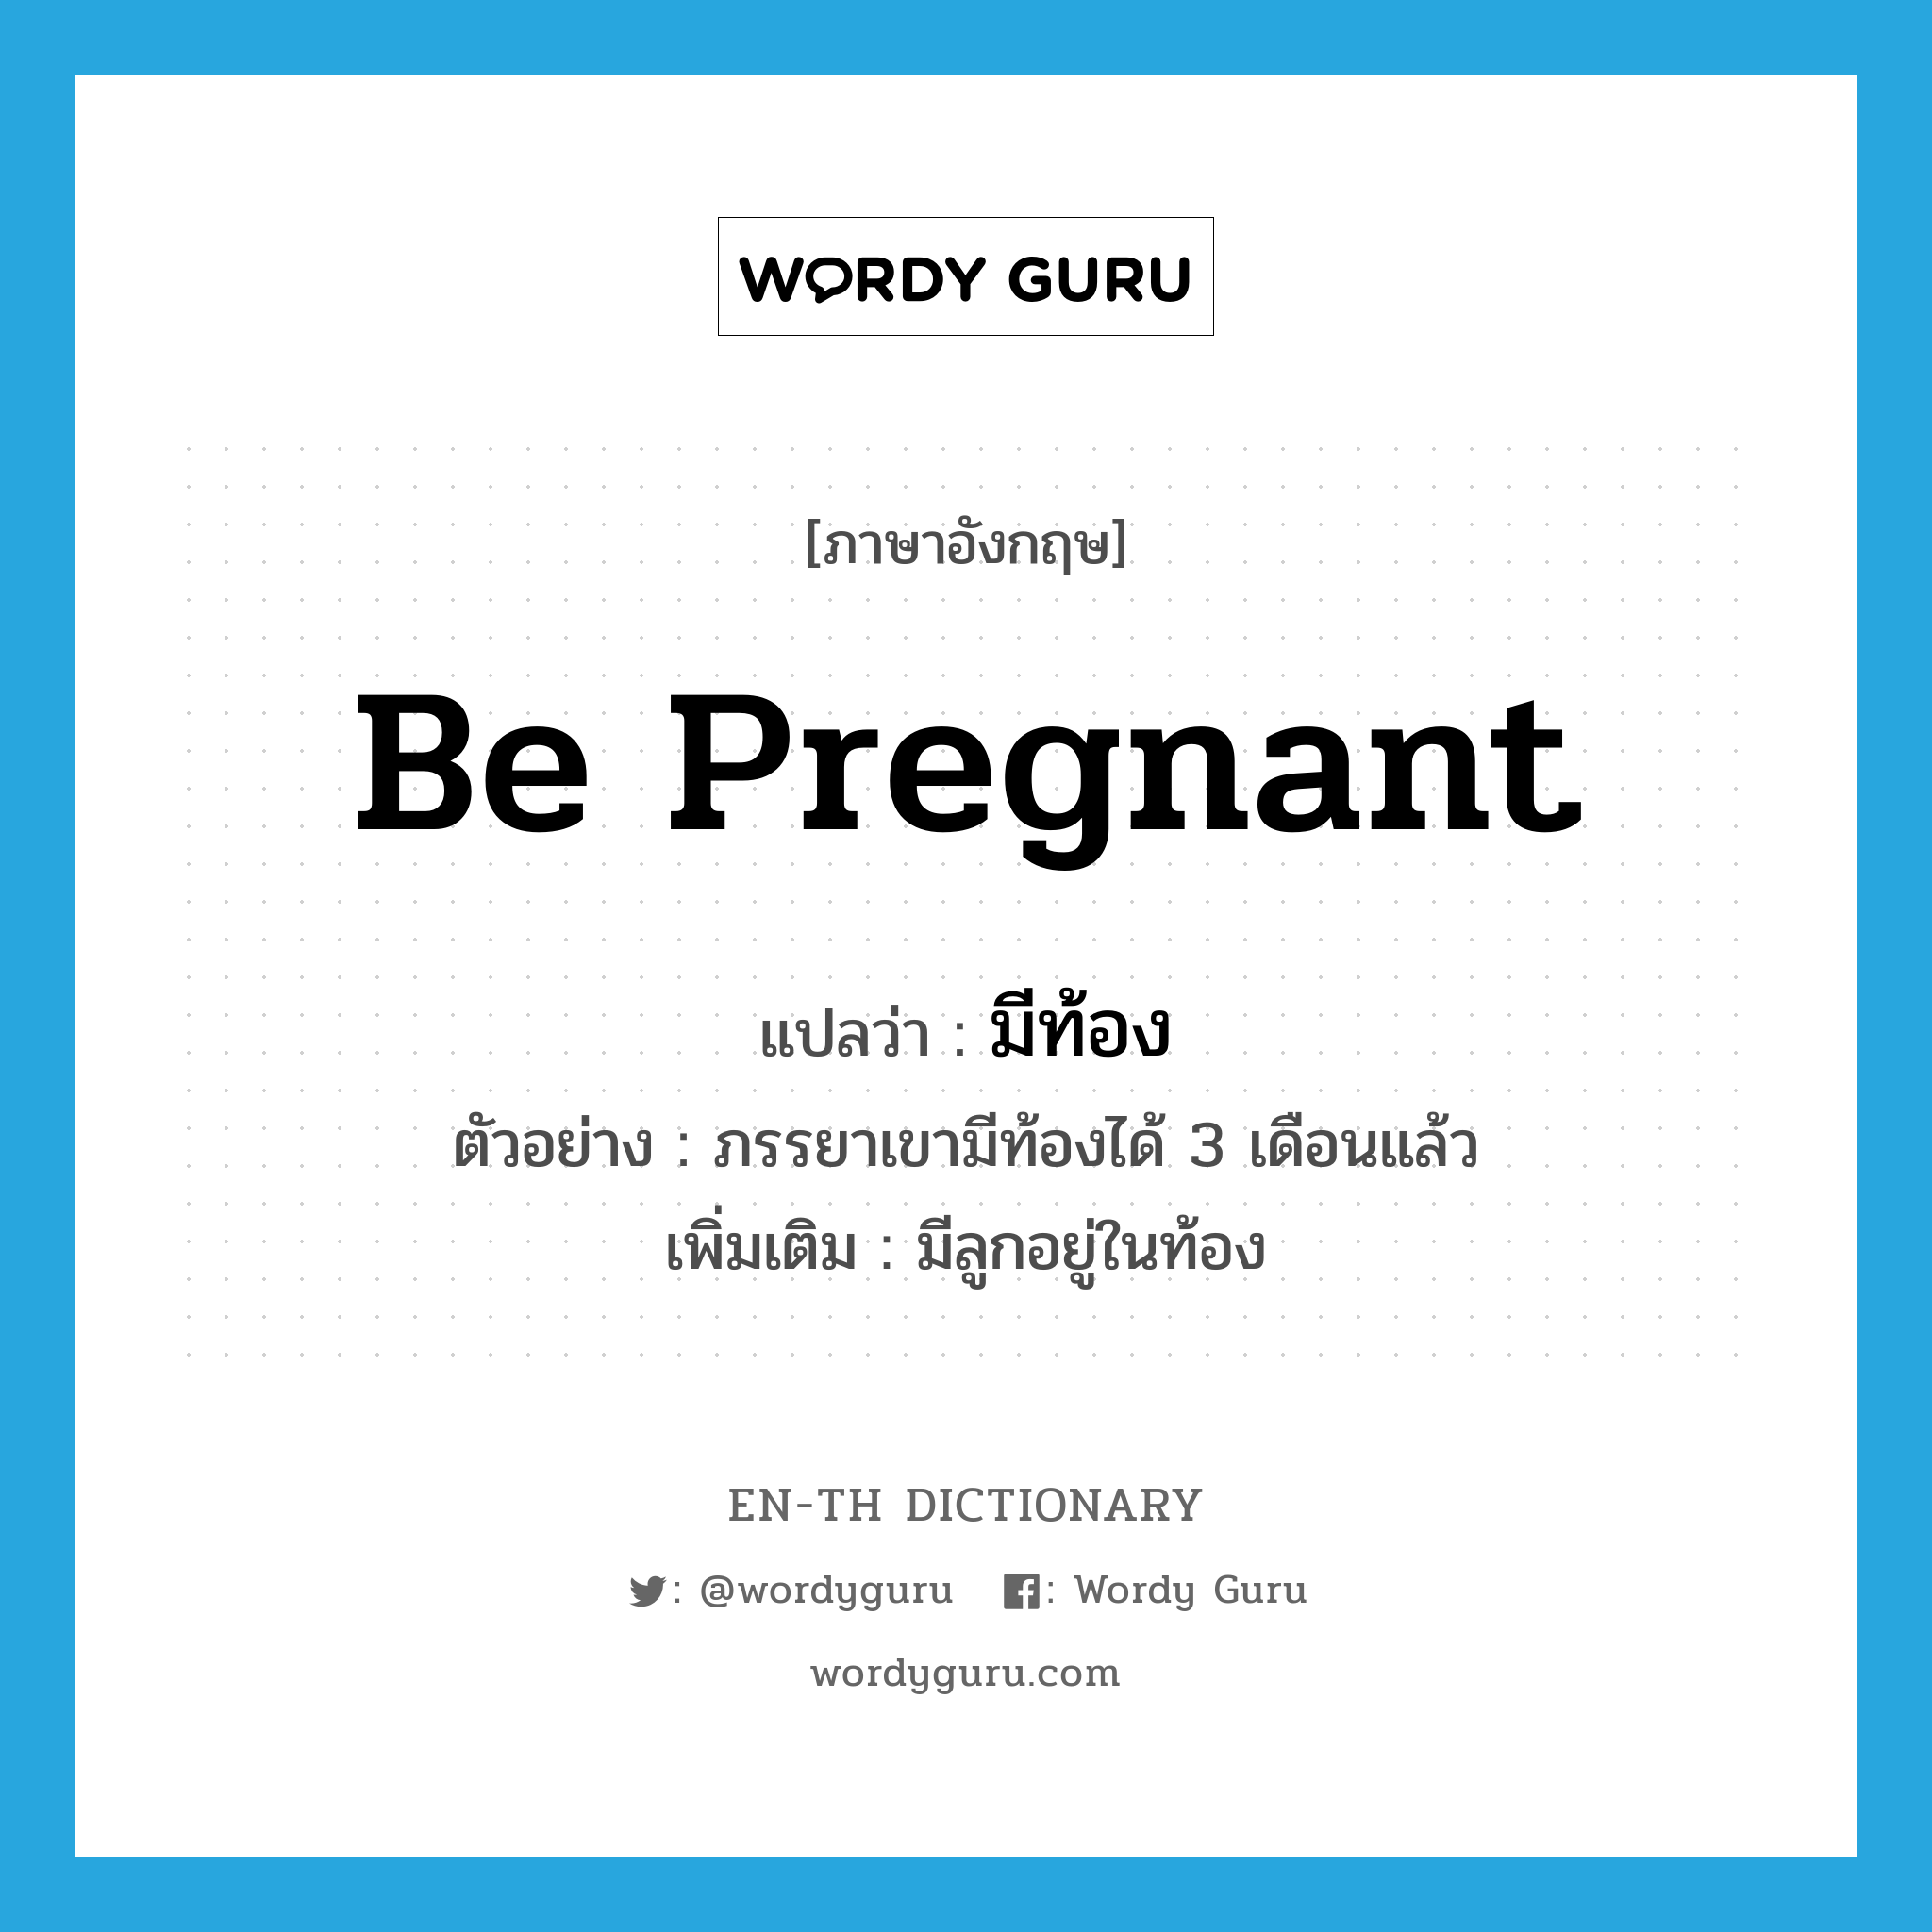 มีท้อง ภาษาอังกฤษ?, คำศัพท์ภาษาอังกฤษ มีท้อง แปลว่า be pregnant ประเภท V ตัวอย่าง ภรรยาเขามีท้องได้ 3 เดือนแล้ว เพิ่มเติม มีลูกอยู่ในท้อง หมวด V